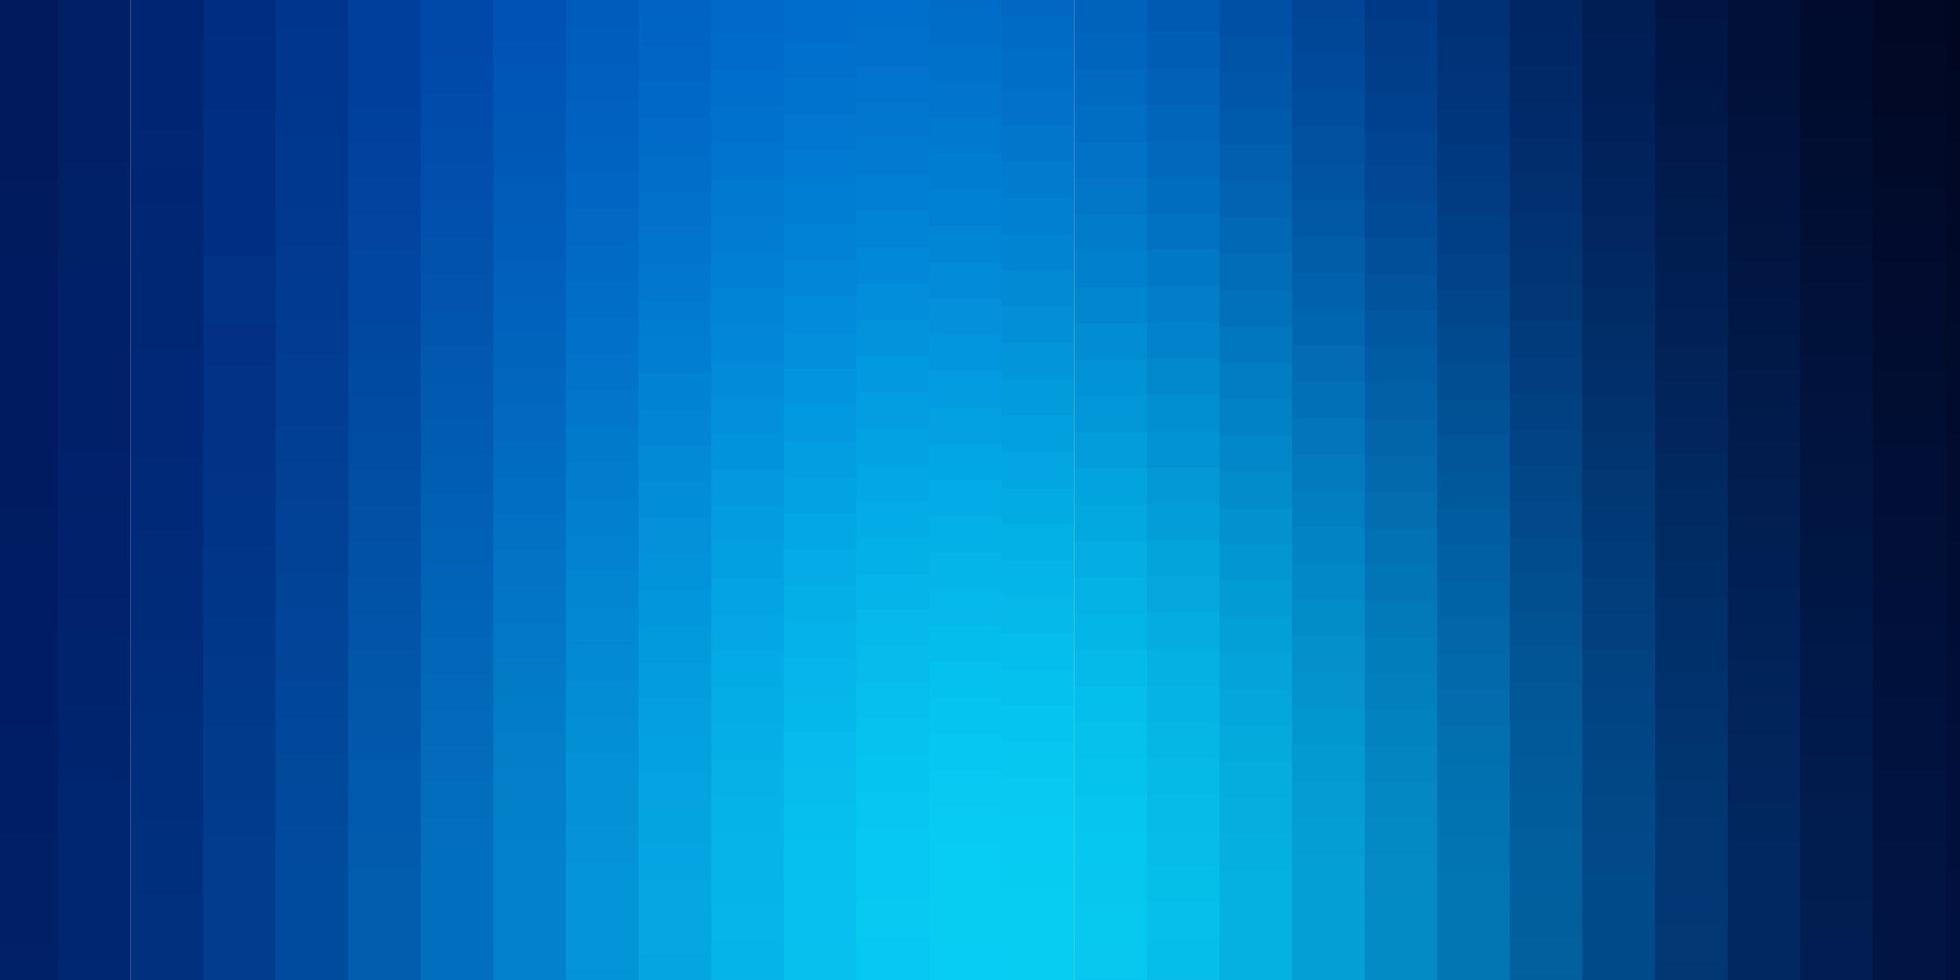 diseño de vector azul oscuro con líneas rectángulos ilustración de degradado abstracto con plantilla de rectángulos de colores para teléfonos móviles